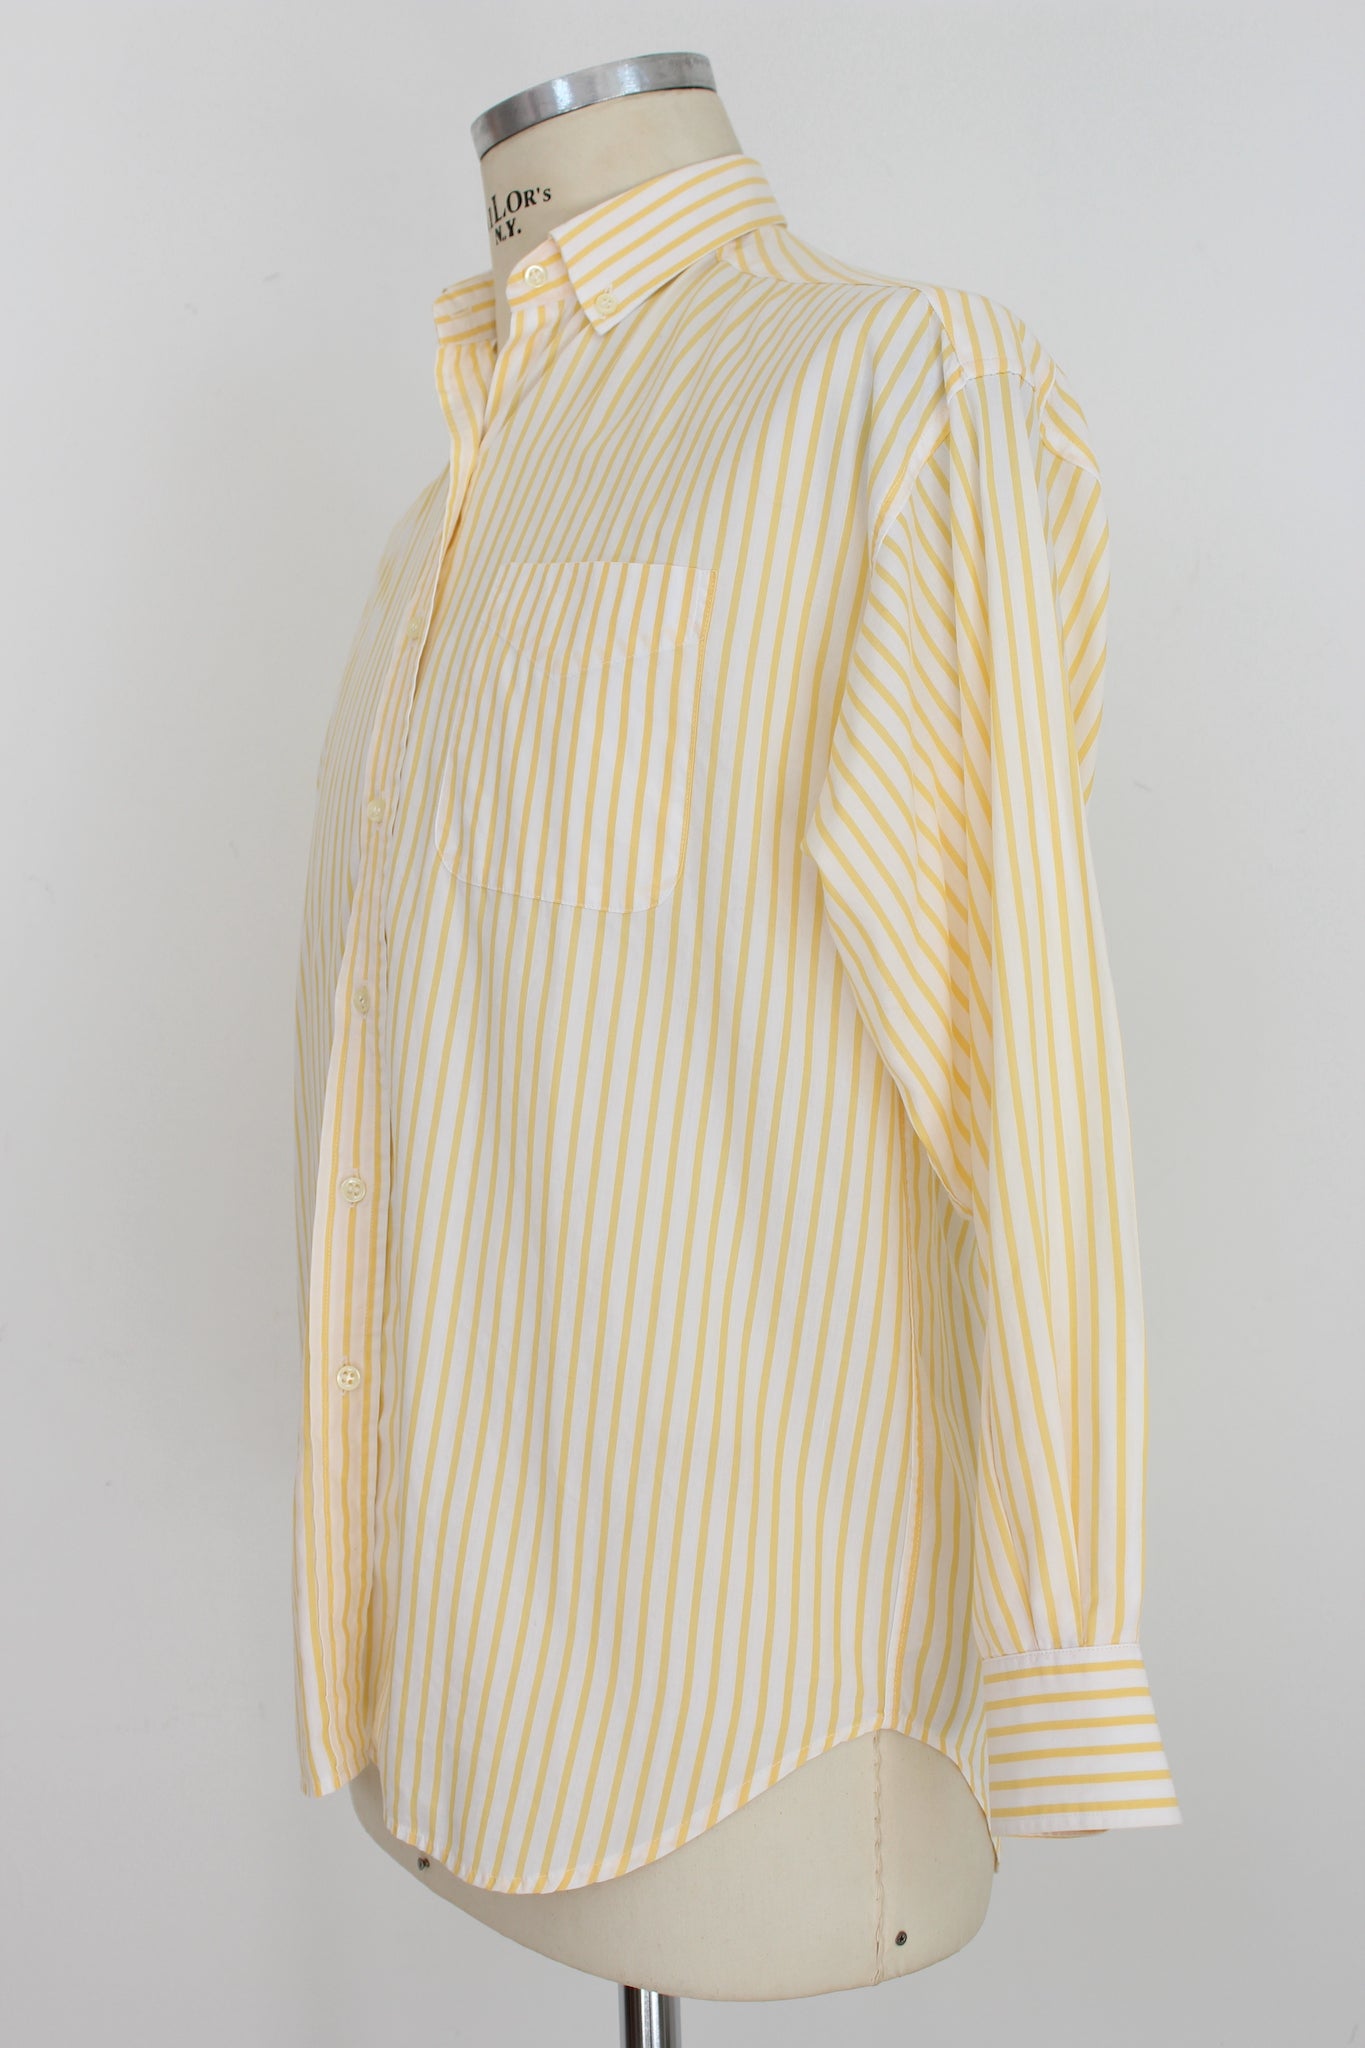 Burberry Yellow White Cotton Vintage Pinstripe Shirt